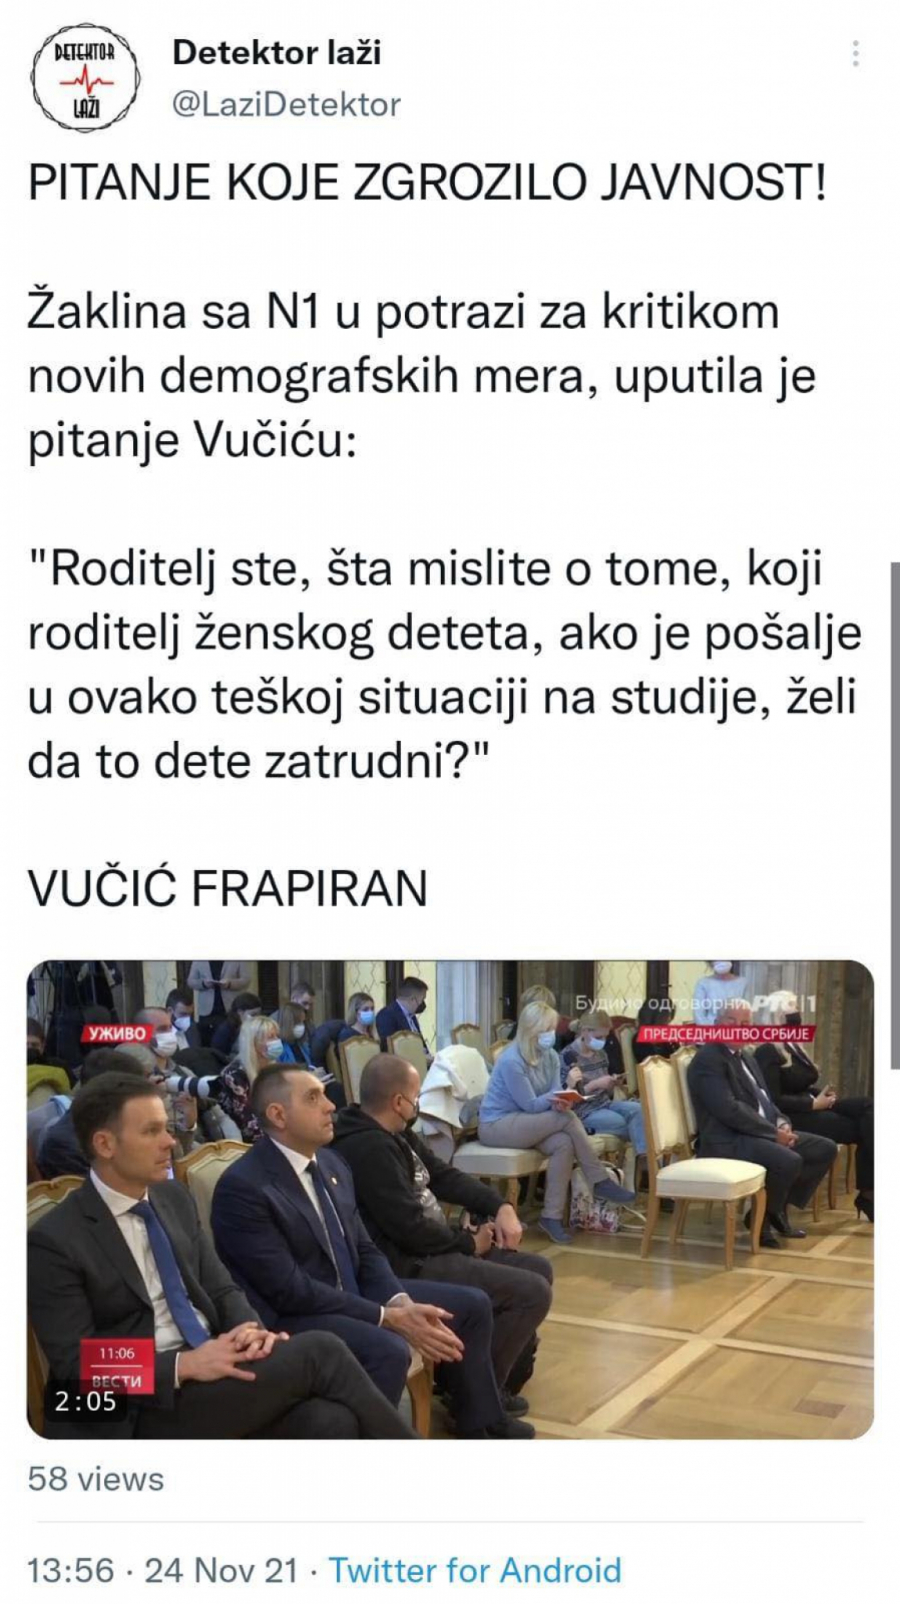 PITANJE SA N1 ZGROZILO JAVNOST Vučić frapiran